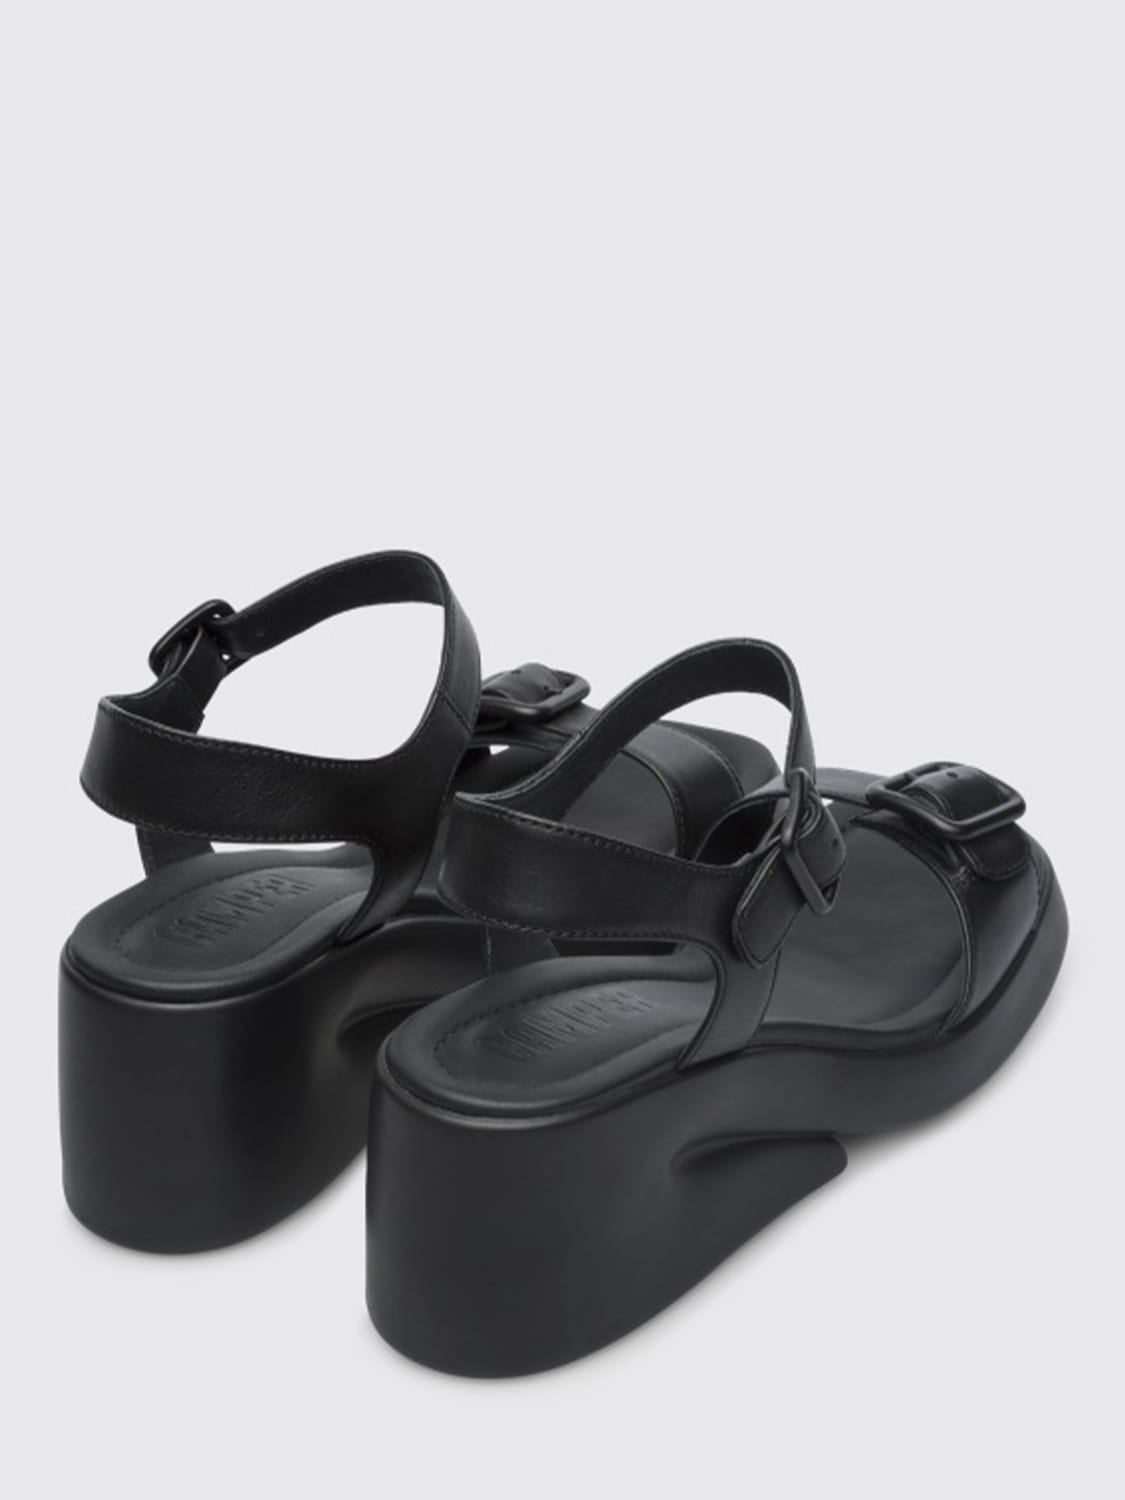 Camper Outlet: Kaah leather sandals - Black | Camper wedge shoes ...